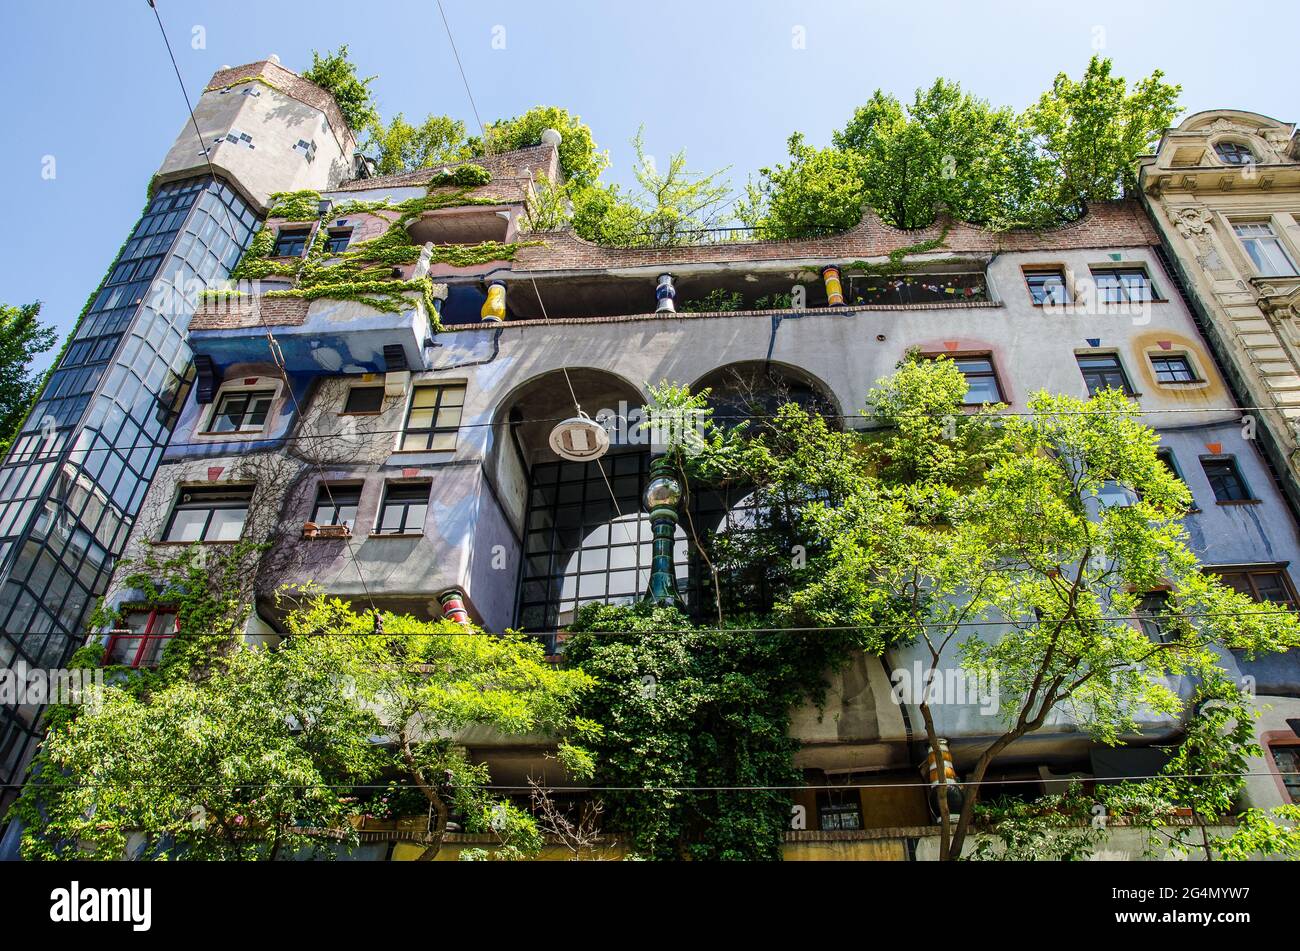 Le Hundertwasserhaus est une maison d'appartements à Vienne construite à la suite de l'idée et du concept de l'artiste autrichien Friedensreich Hundertwasser Banque D'Images